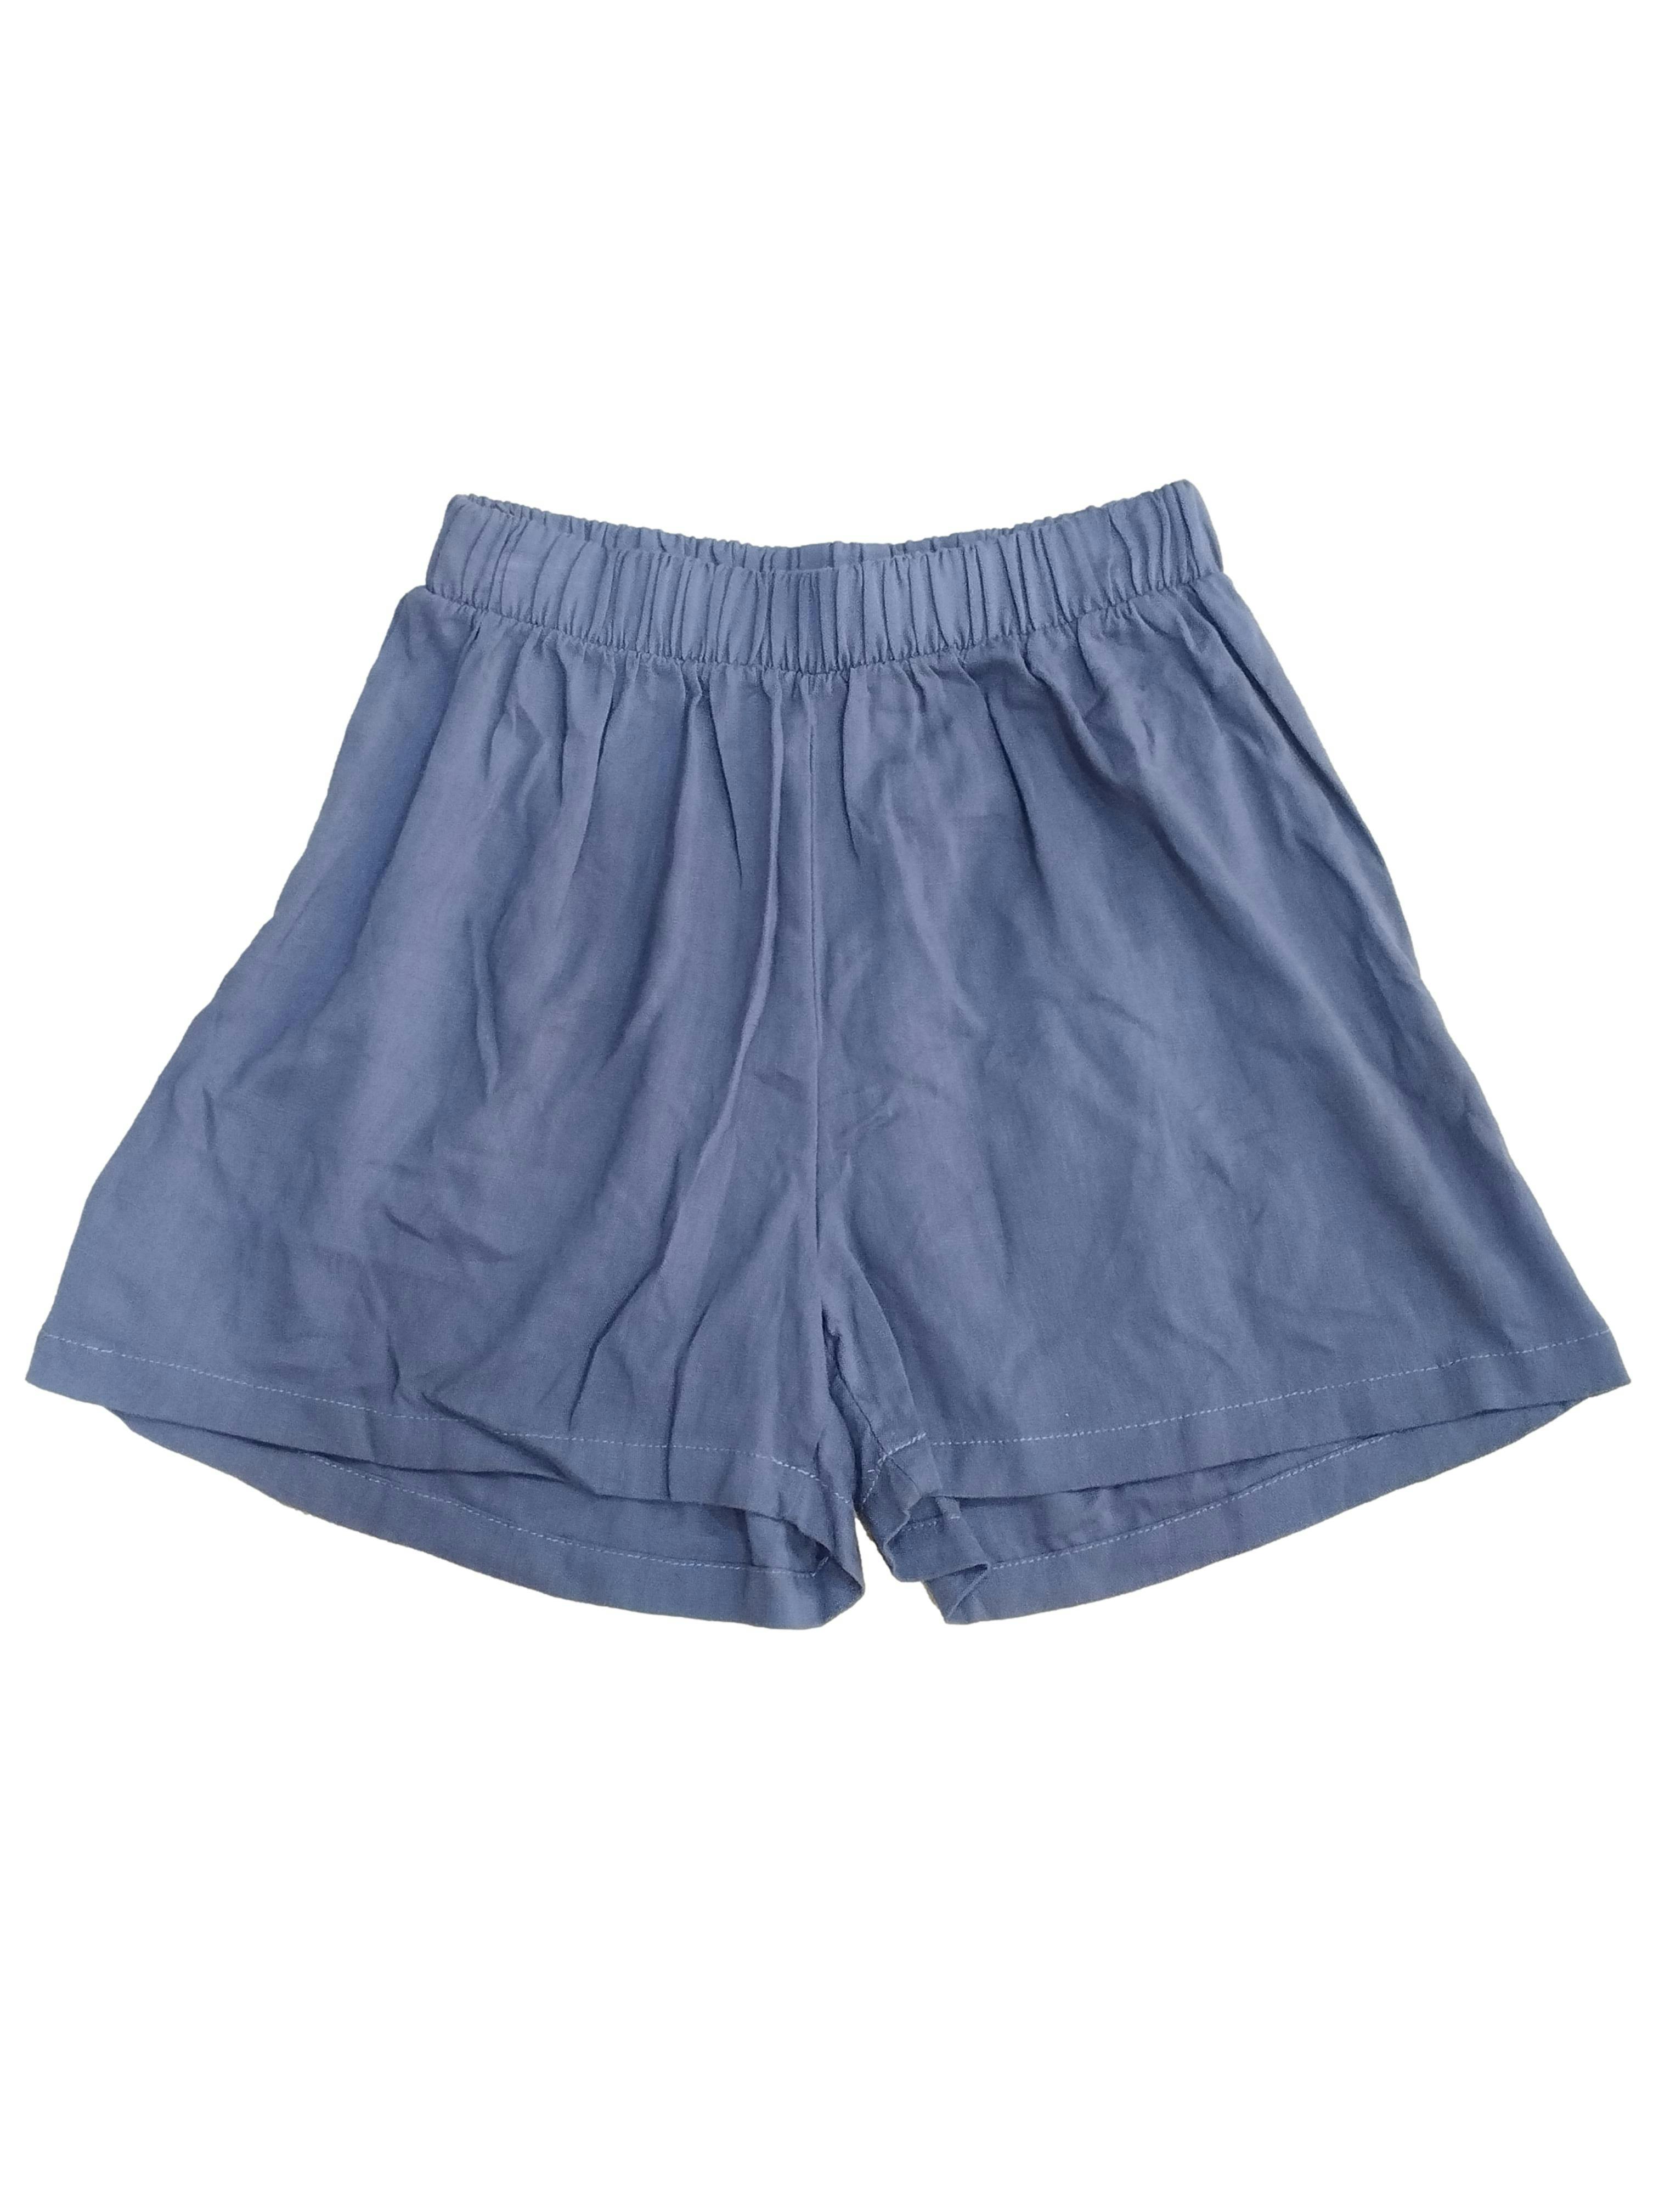 Short azul acero, pretina ancha en cintura, tela fresca. Cintura: 60 cm (sin estirar), Tiro: 28 cm, Largo: 37 cm